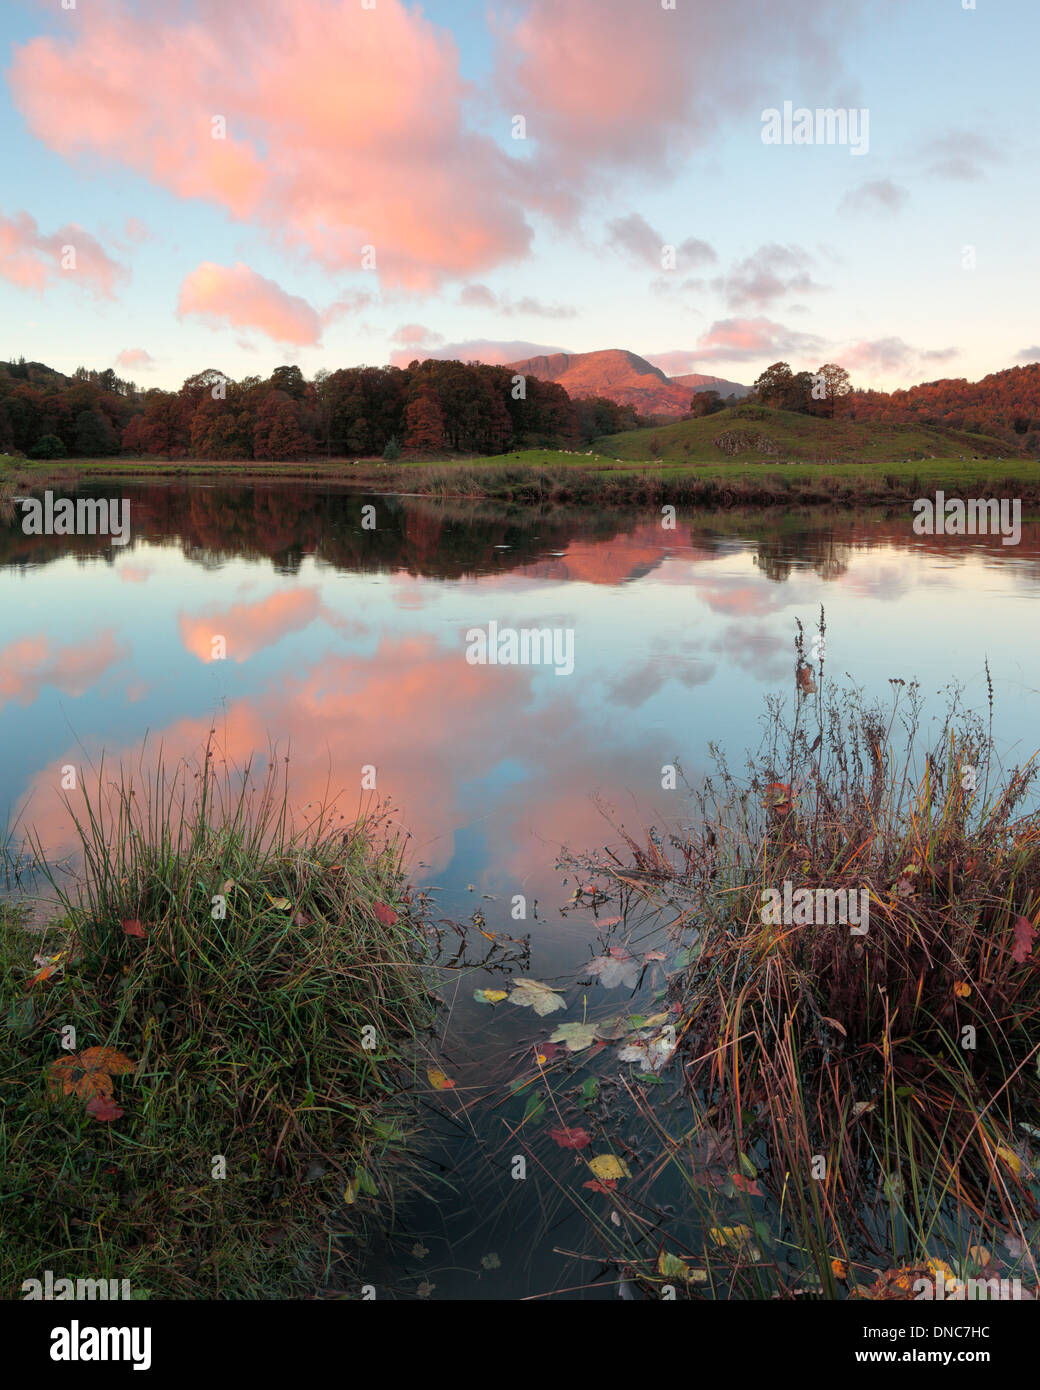 Automne couleur reflète dans les eaux calmes de la rivière Brathay dans la région des lacs de l'Angleterre Banque D'Images